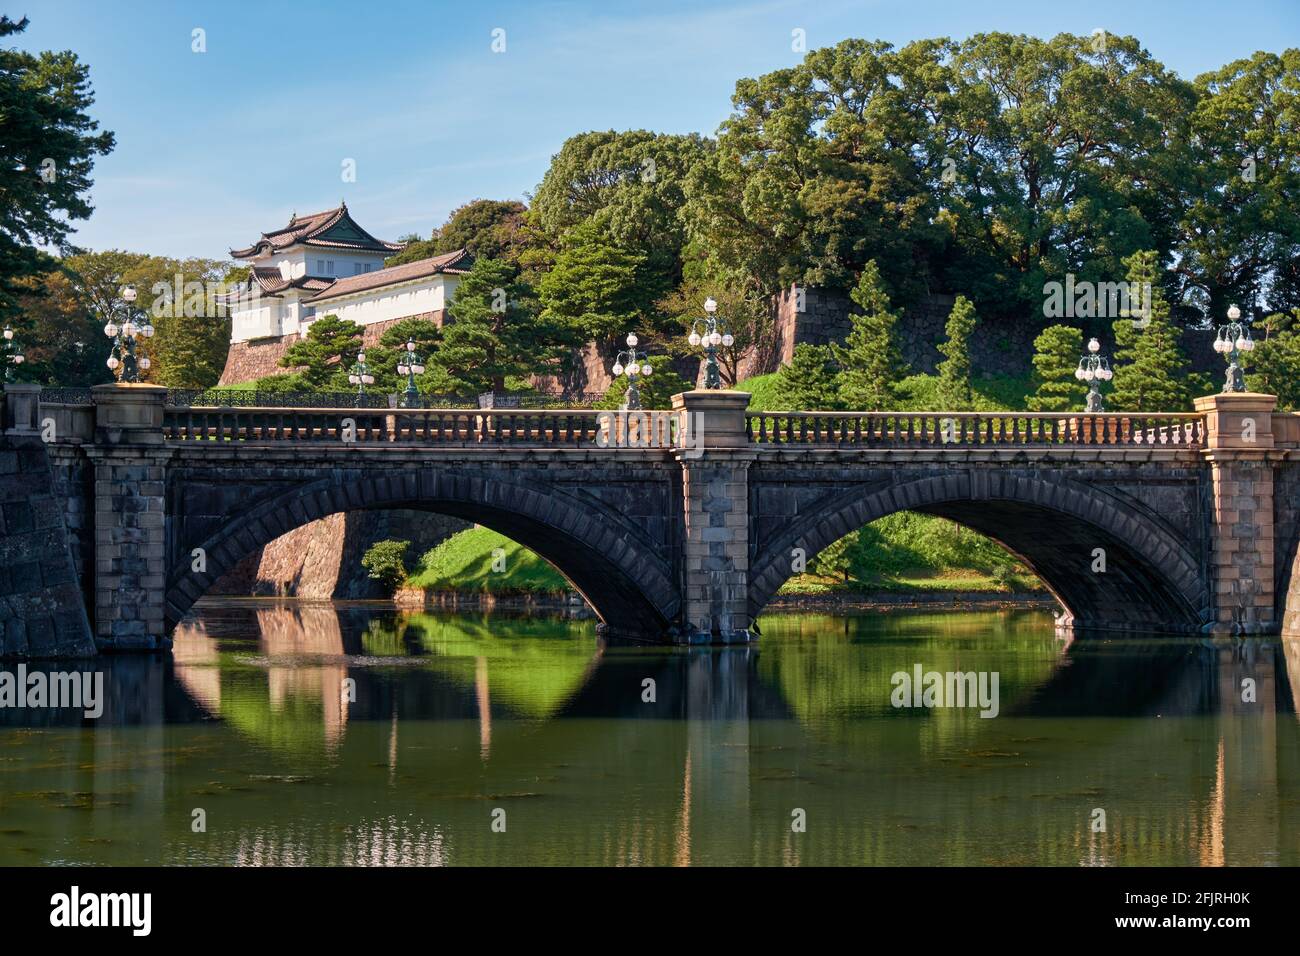 El puente Seimon Ishibashi conduce a la puerta principal del Palacio Imperial de Tokio. Es conocido como el puente de Eyeglasses (Meganebashi) debido a su arco de piedra Foto de stock